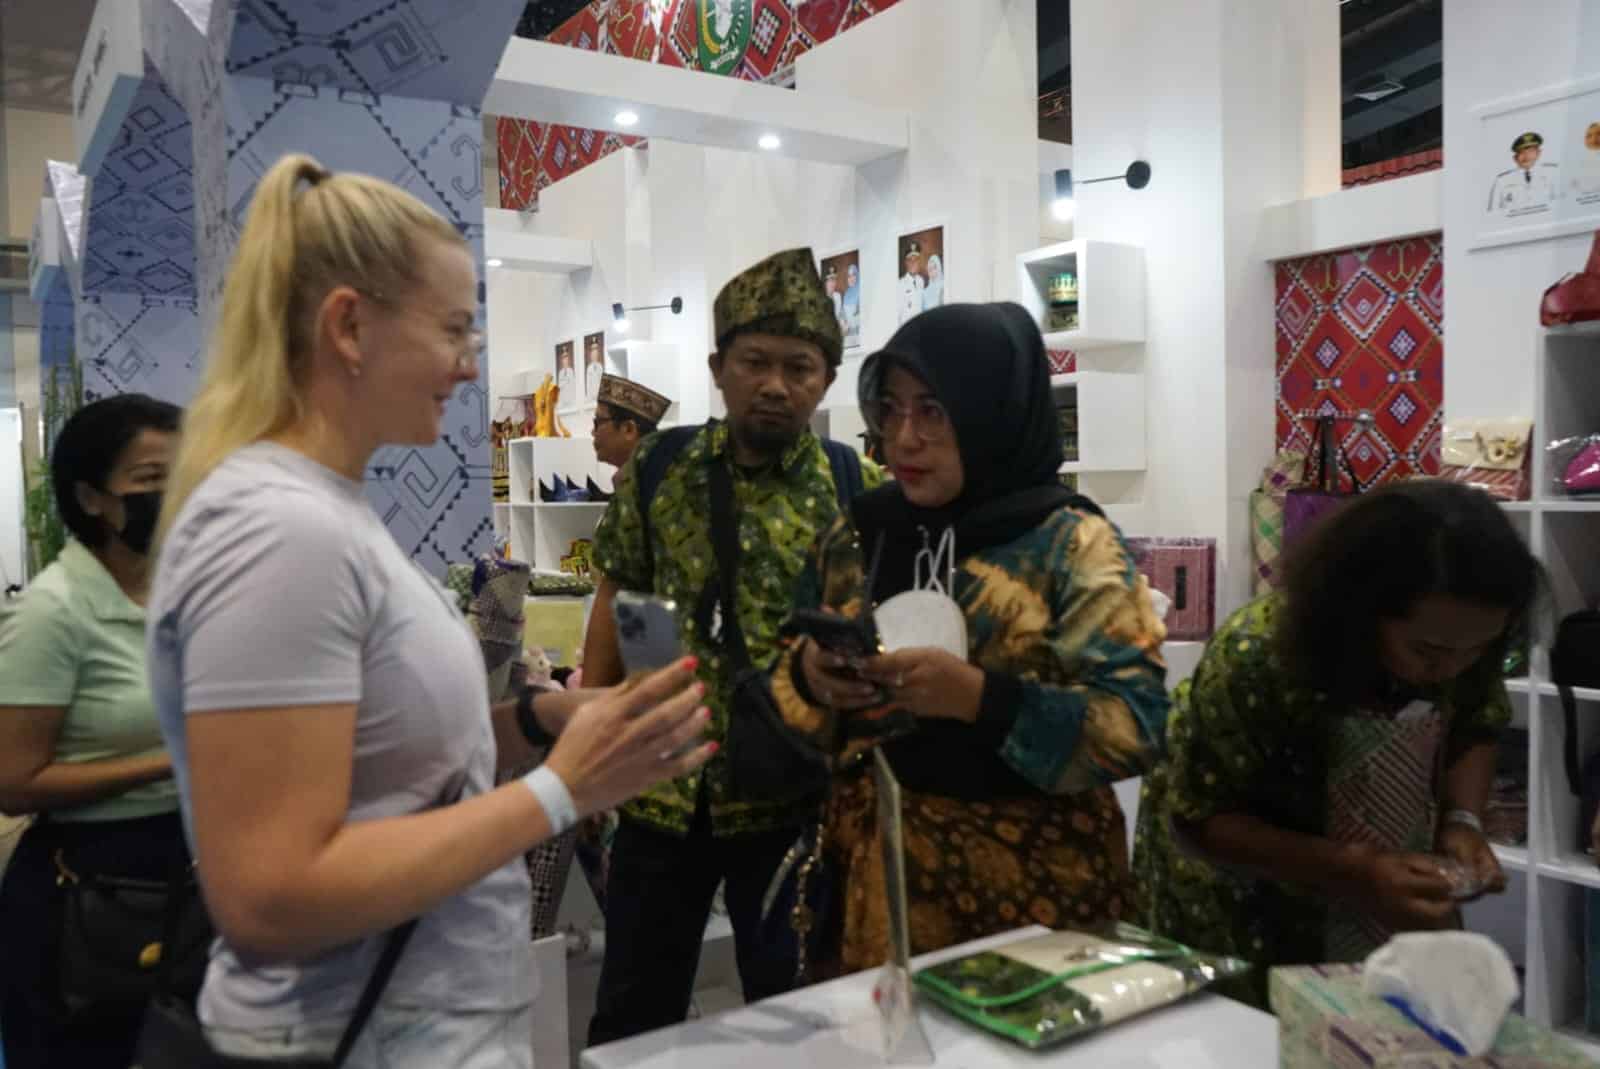 Ketua Dekranasda Kabupaten Kayong Utara, Yayuk Winarti Citra Duani memperkenalkan produk kerajinan Kayong Utara kepada turis asing, pada ajang INACRAFT 2023, di Jakarta Convention Center (JCC), Kamis (02/03/2023). (Foto: Prokopim)